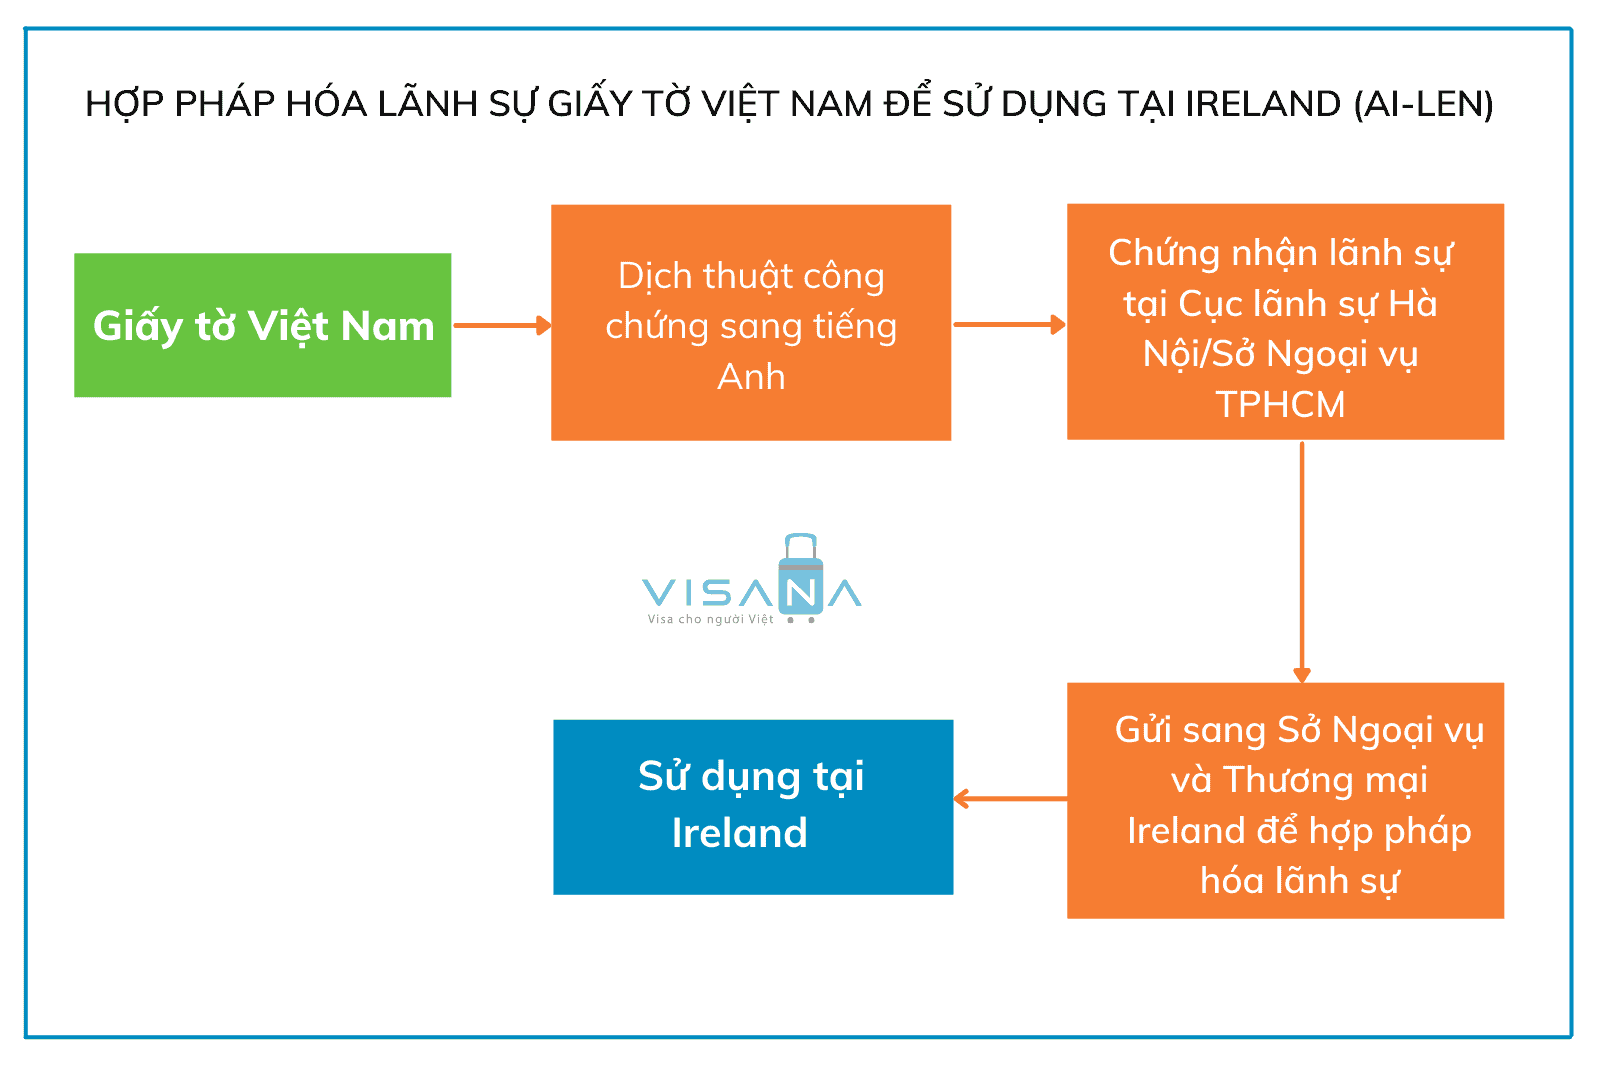 Quy trình hợp pháp hóa lãnh sự Ireland cho giấy tờ IViệt Nam sử dụng tại Ireland